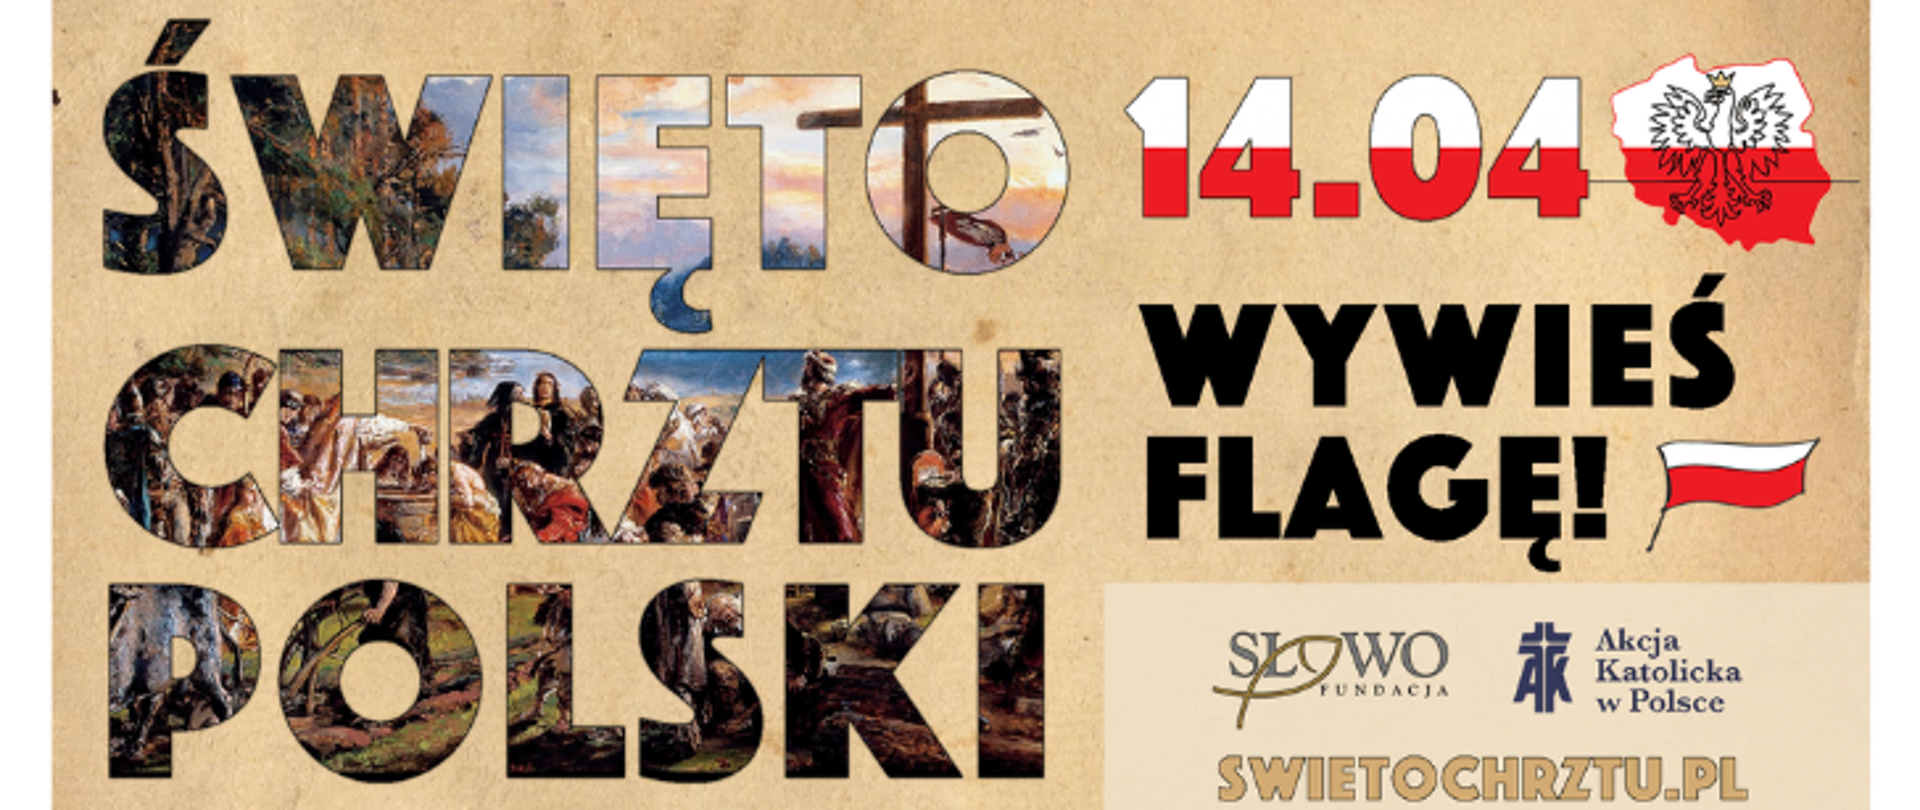 na zdjęciu znajduje się napis "Święto Chrztu Polski 14.04 wywieś flagę!" oraz logo funacji "Słowo"